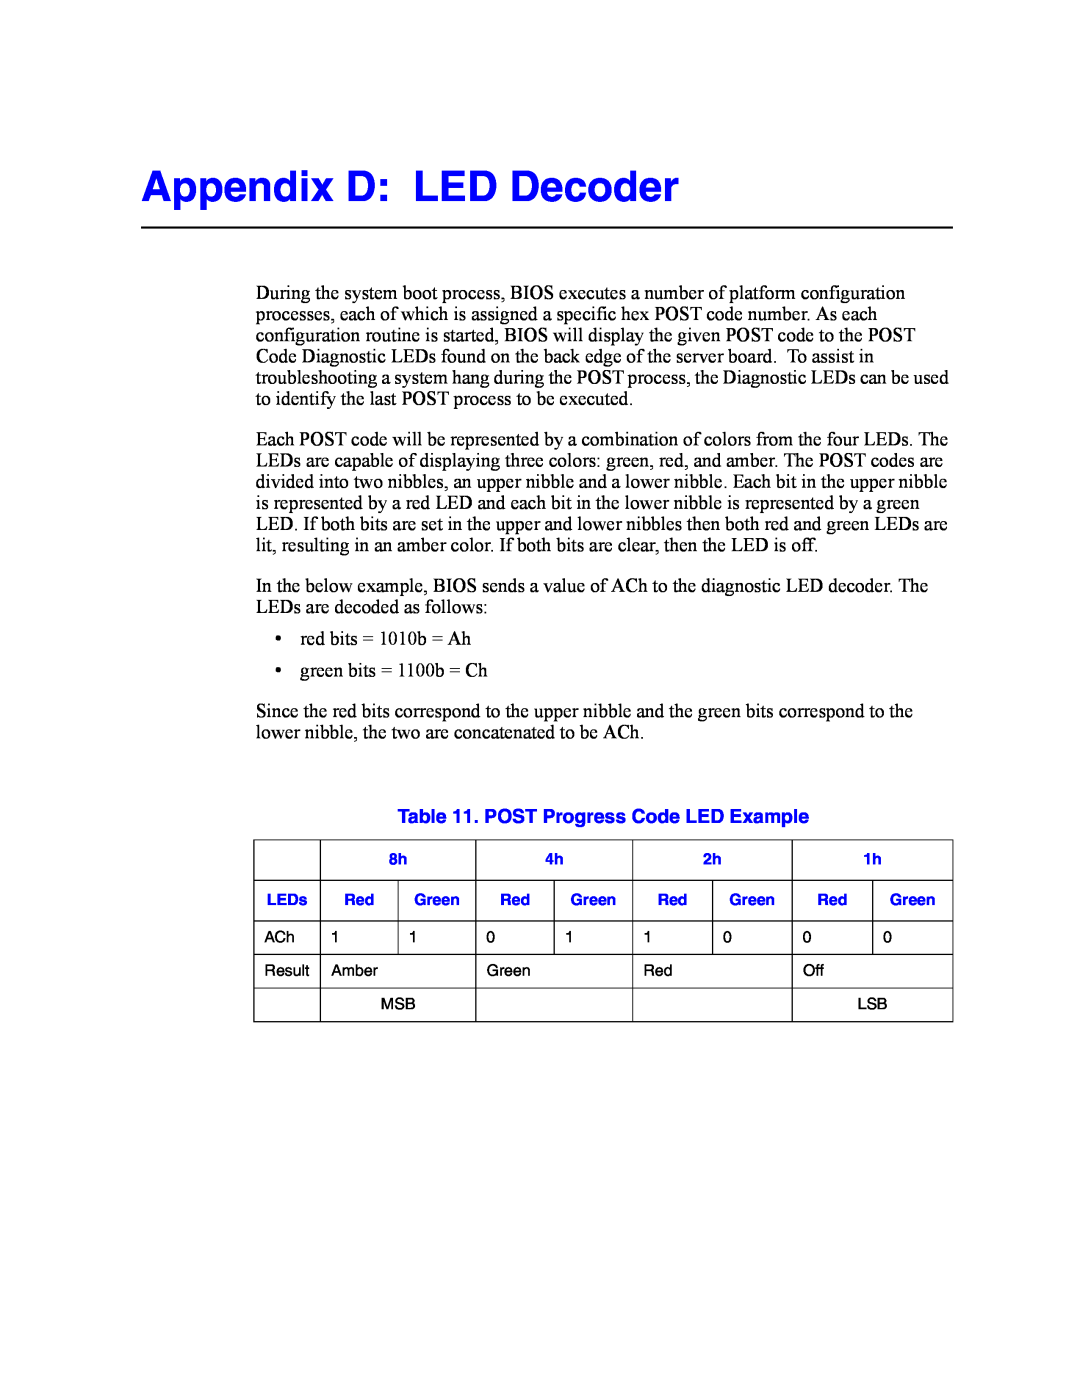 Intel SR2500AL manual Appendix D LED Decoder, POST Progress Code LED Example 